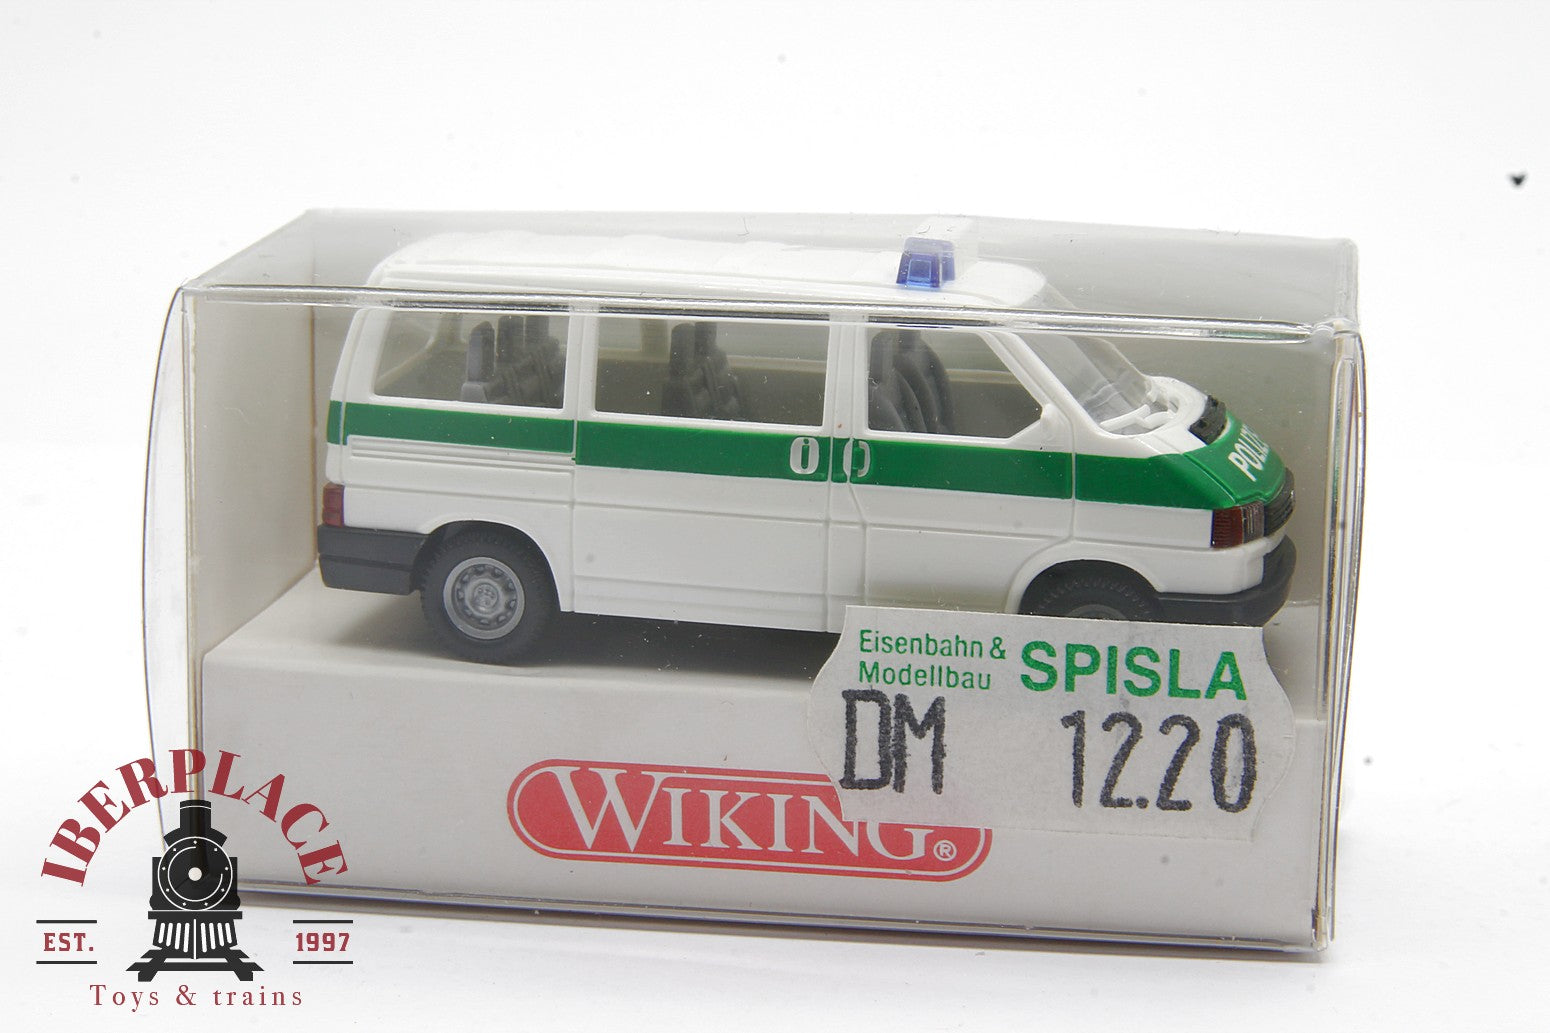 1/87 escala H0 auto-modelismo Wiking 109 01 23 Polizei VW Caravelle